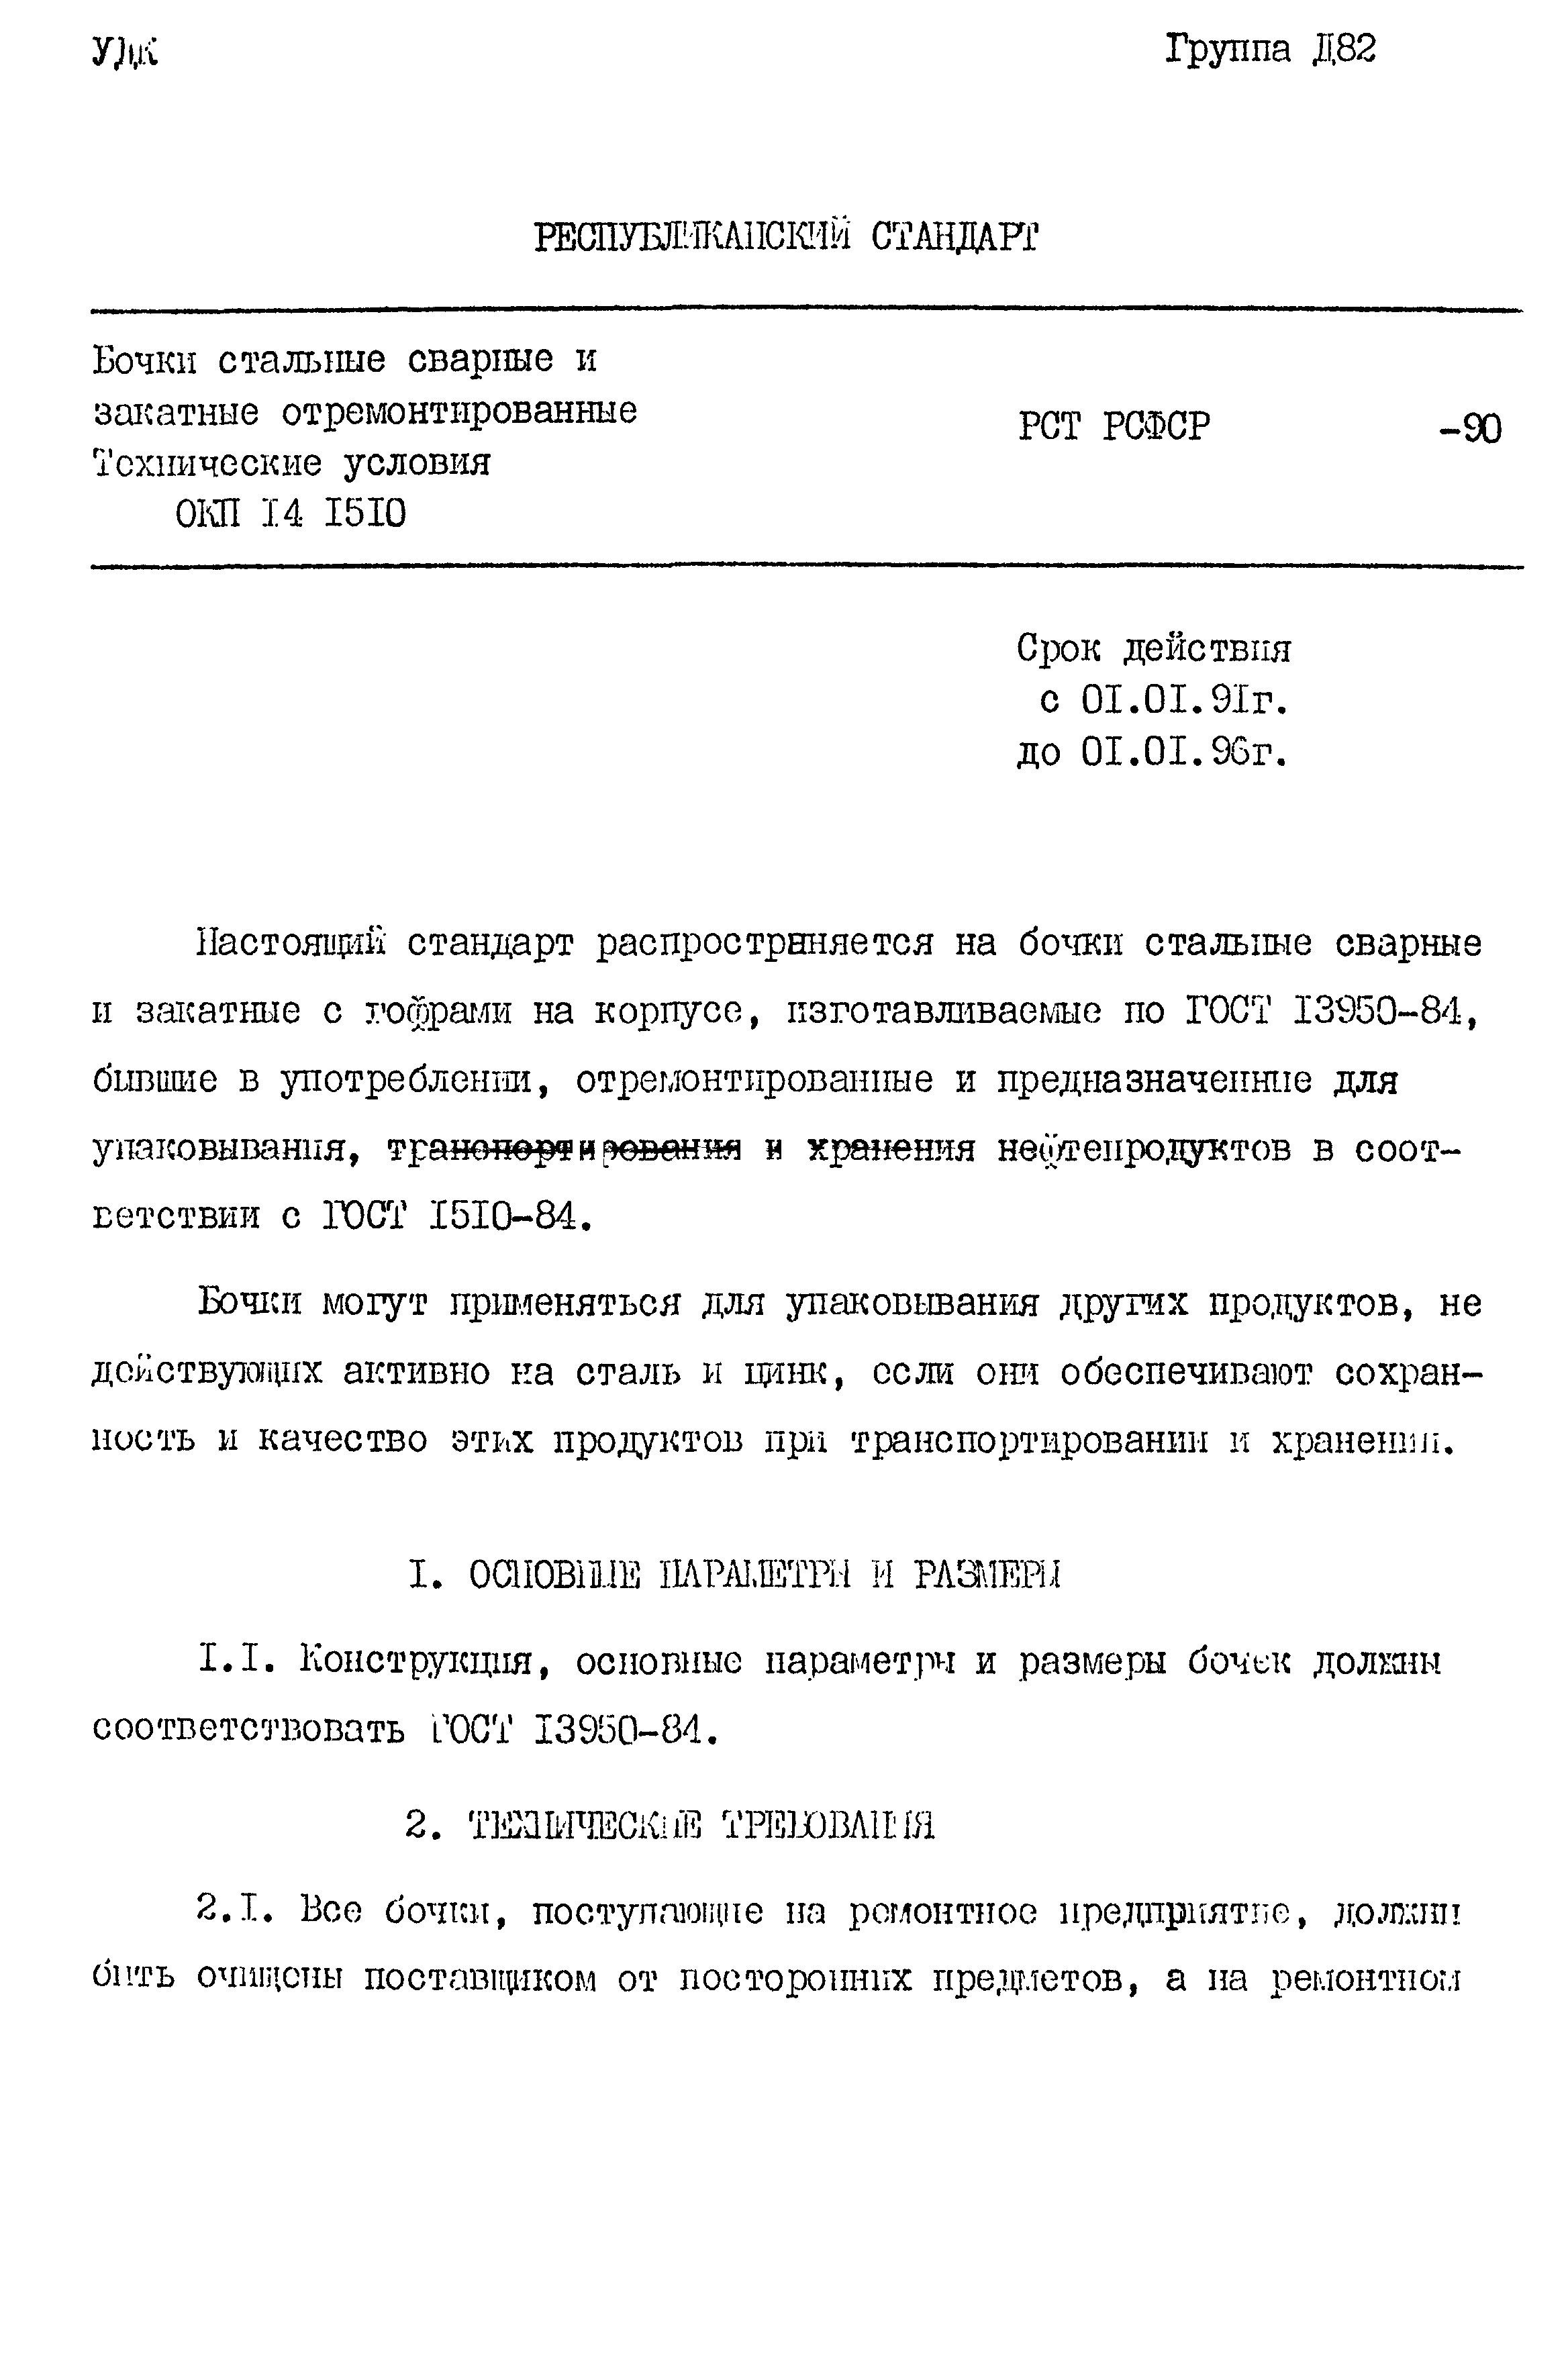 РСТ РСФСР 771-90